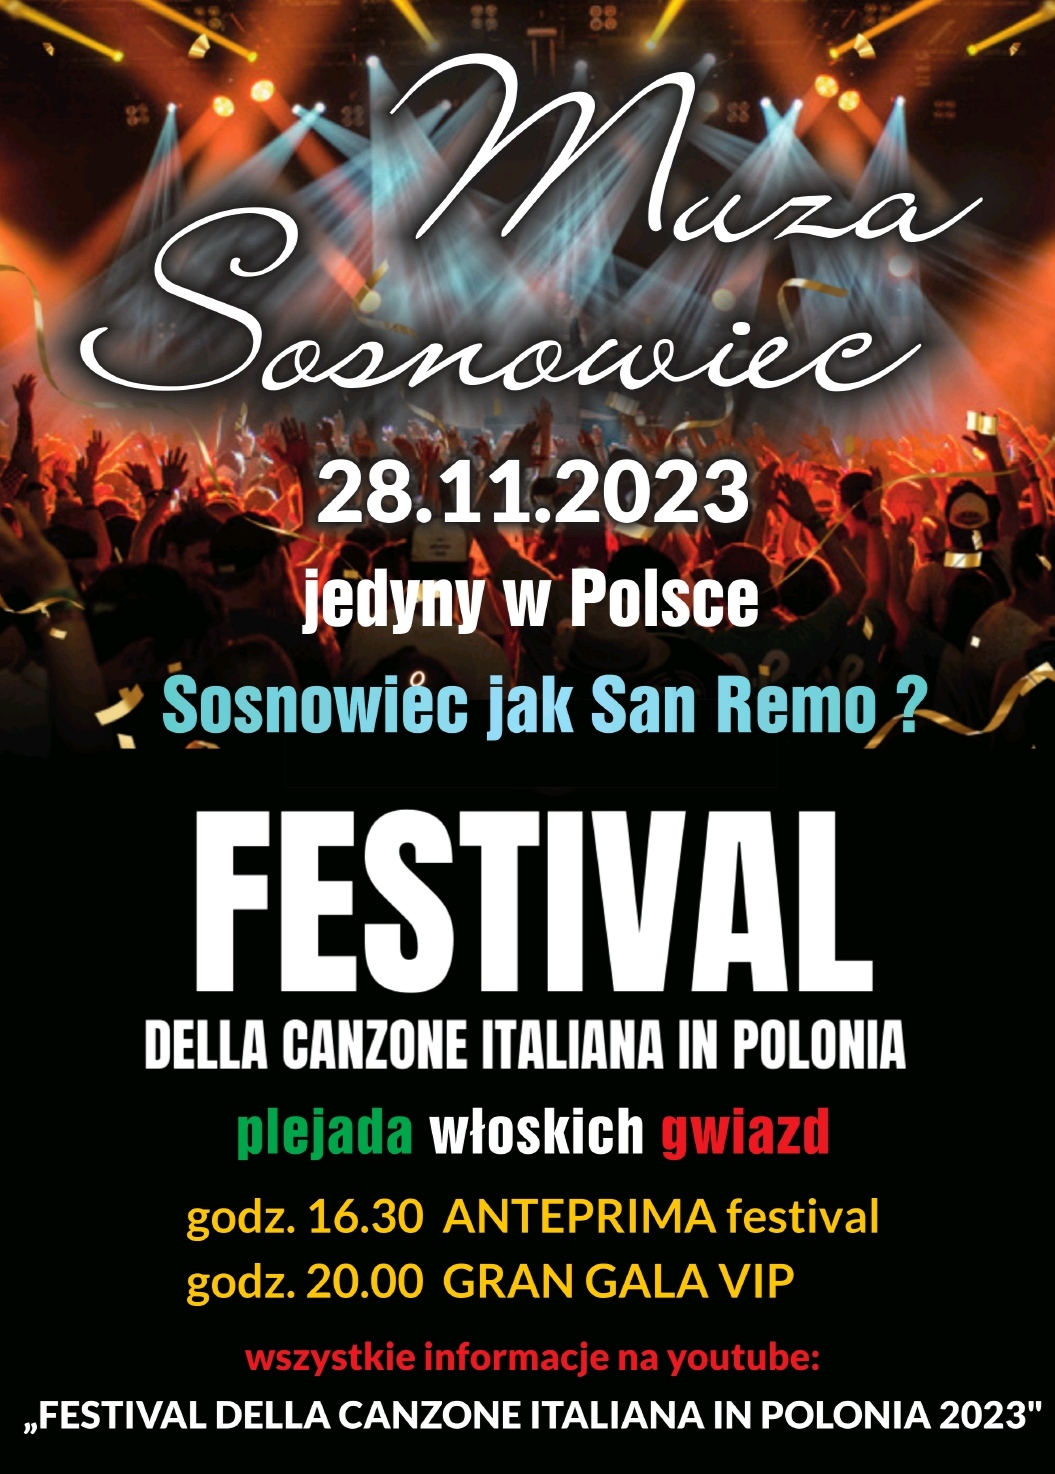 Zdjęcie: Festival della Canzone Italiana in Polonia